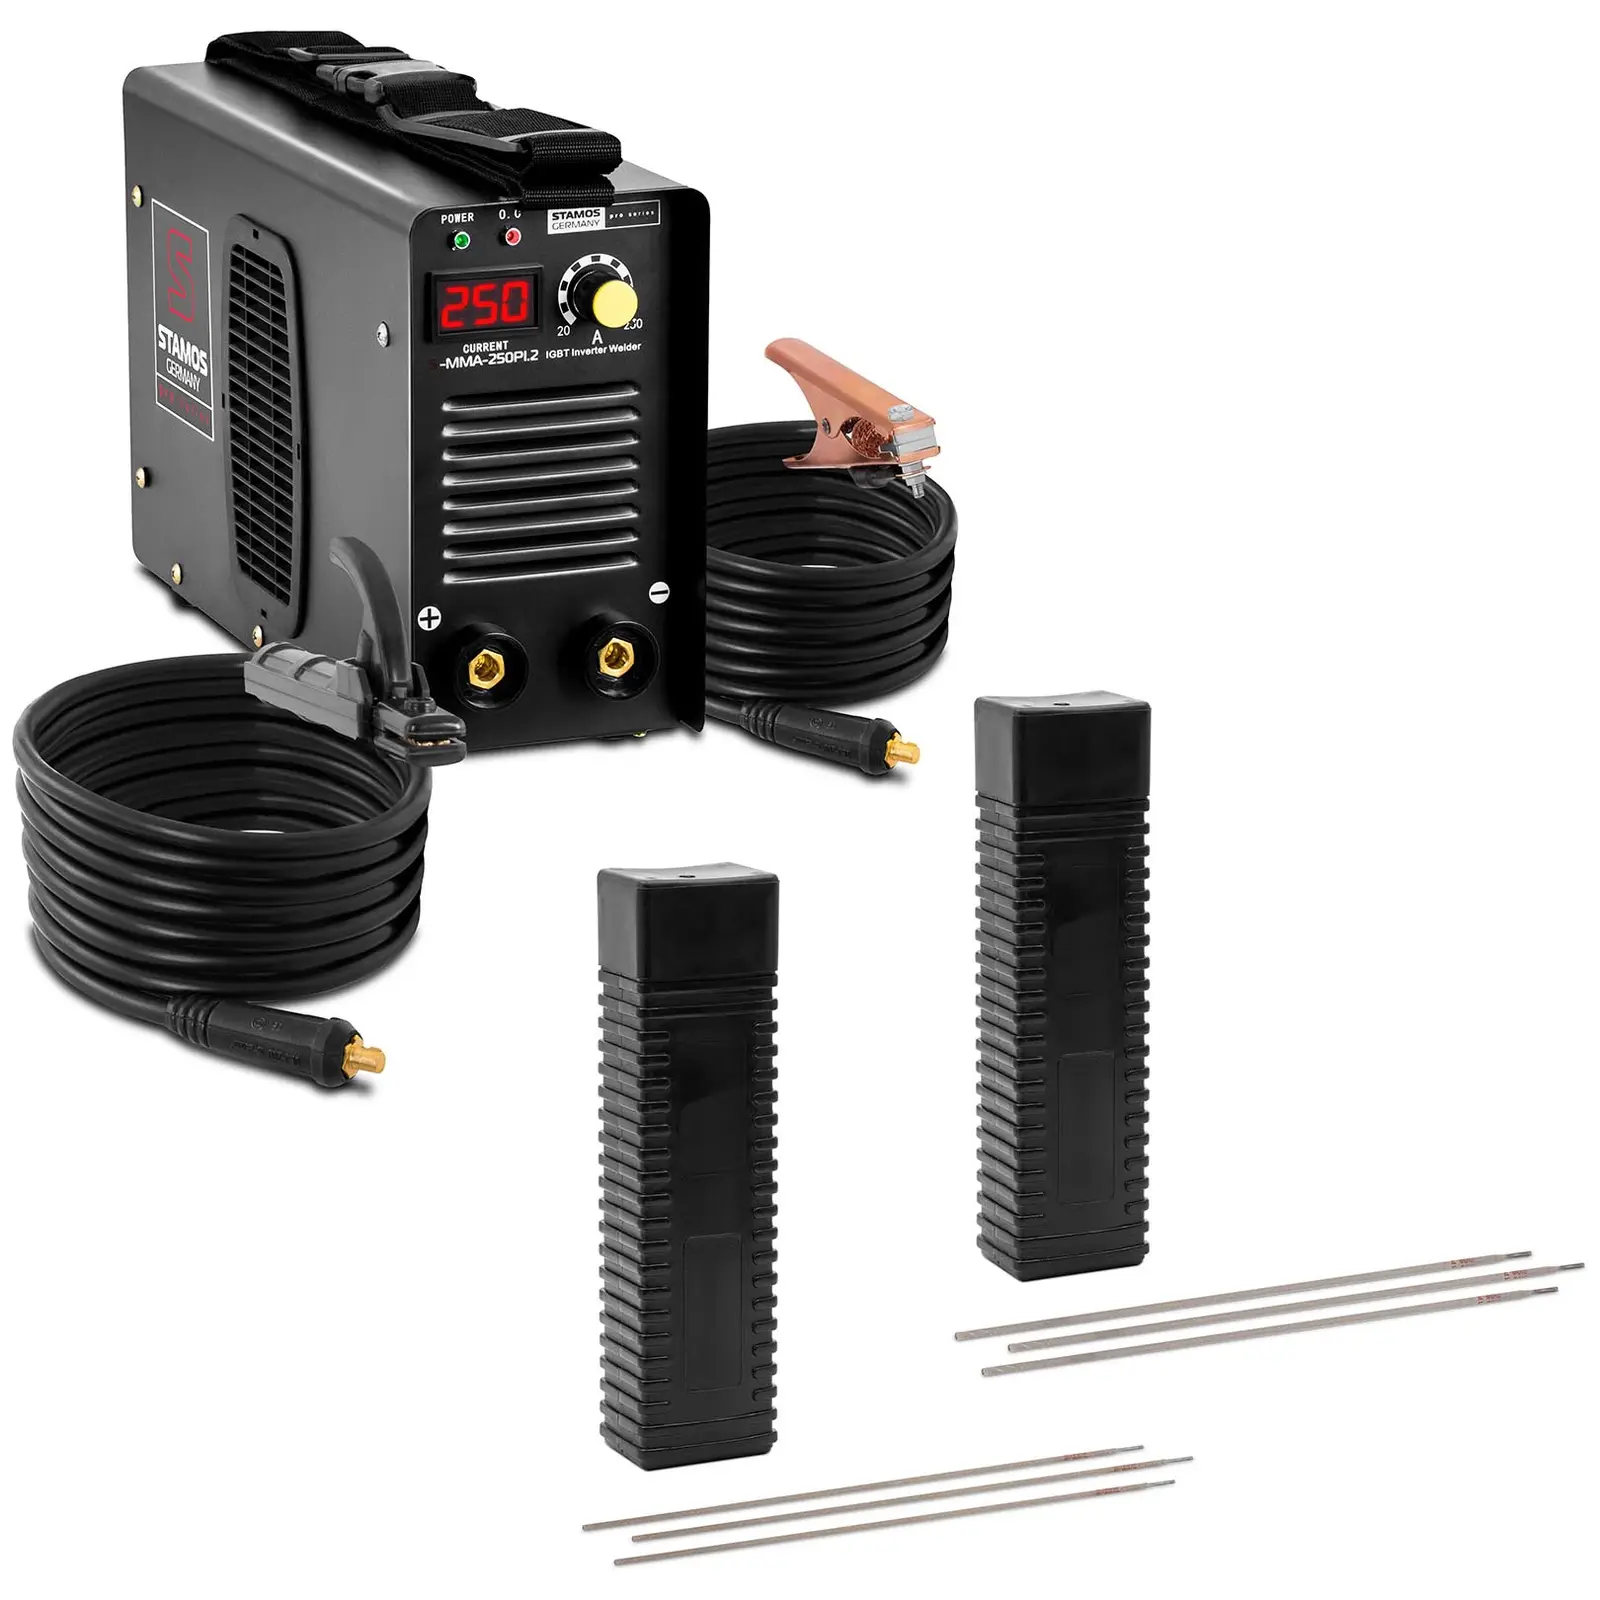 Svejsesæt elektrodesvejser 250 A - 8 m Kabel - svejseelektroder E6013 - 2,5 x 350 mm - 5 kg og E6013 - 3,2 x 350 mm - 5 kg